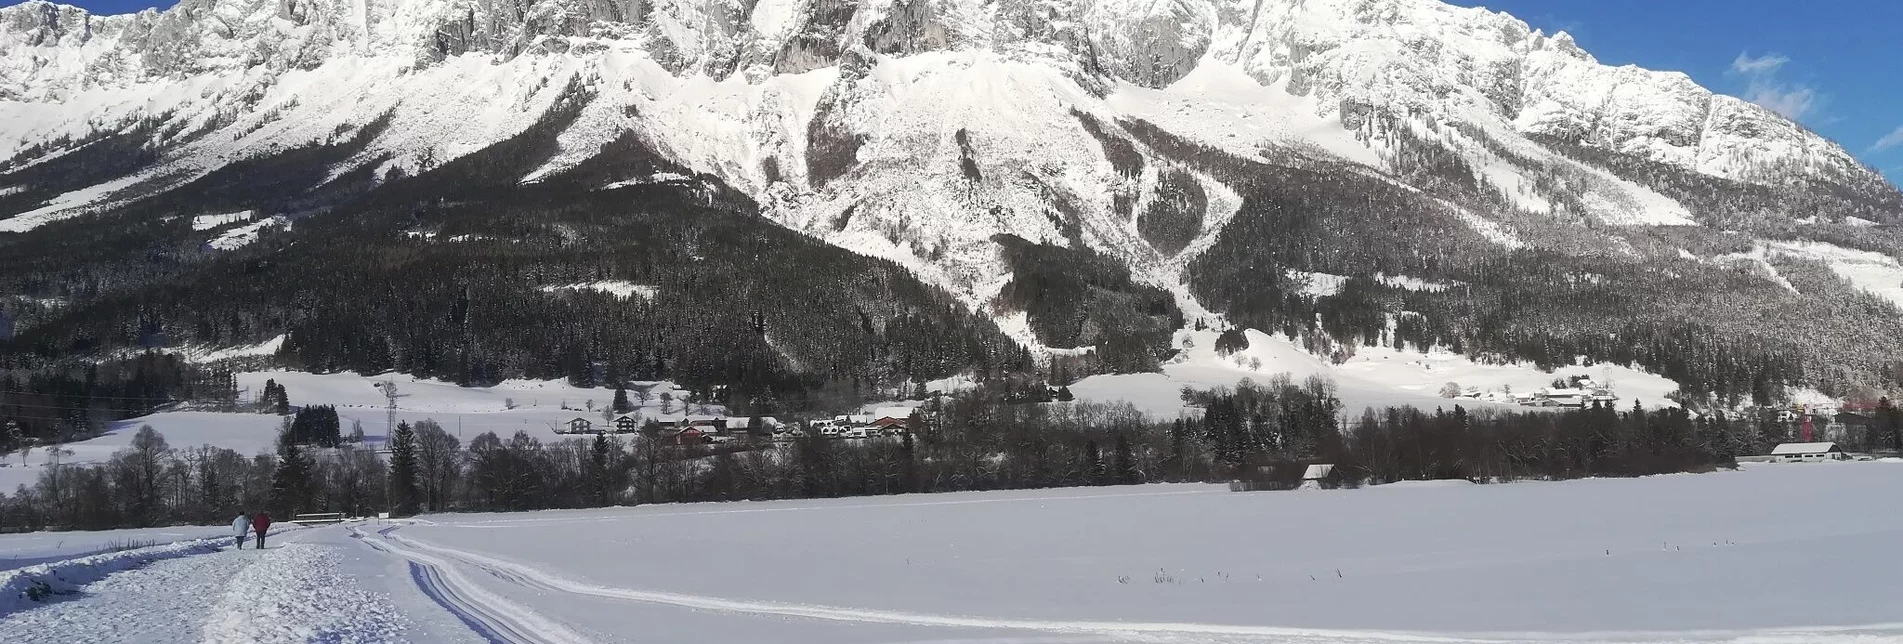 Ski-nordic-classic XC trail Öblarn-Niederöblarn - Touren-Impression #1 | © Erlebnisregion Schladming-Dachstein